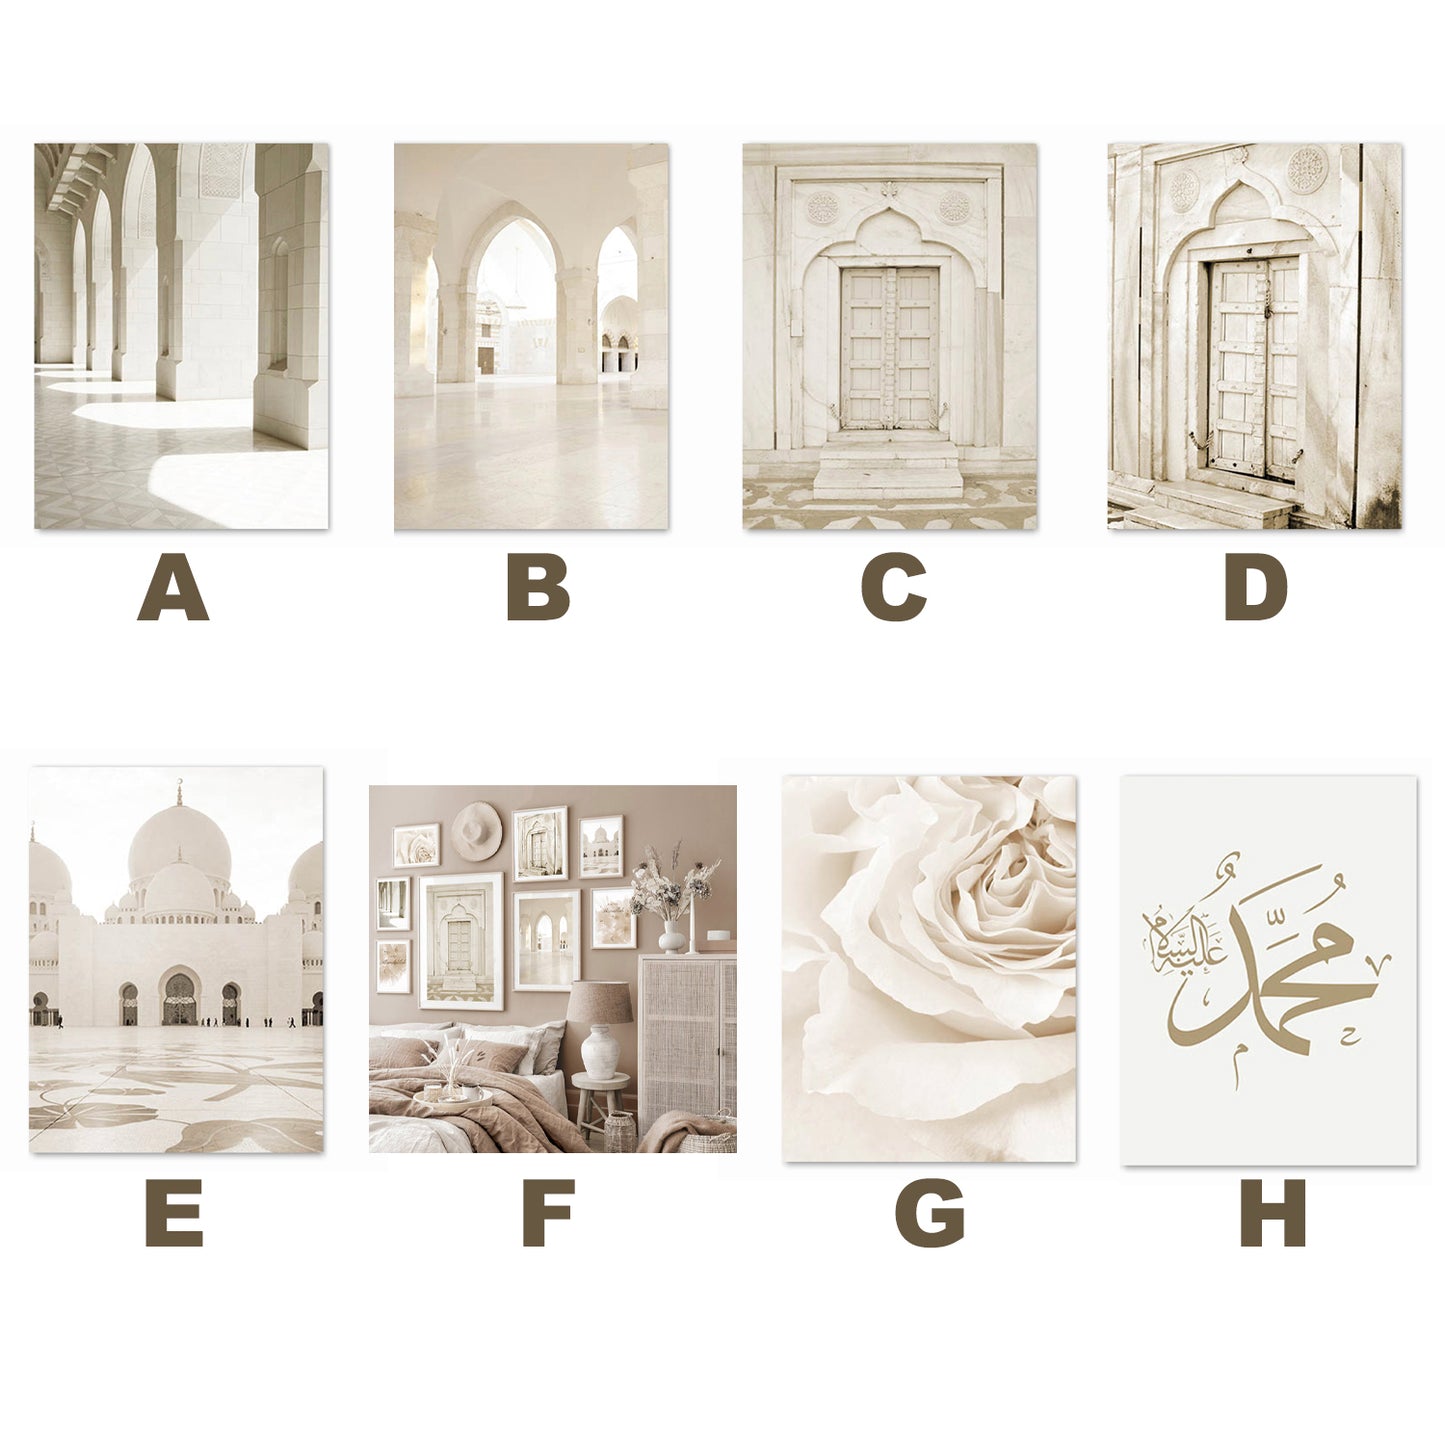 [unframed] Islamic Architecture Taj Mahal Prints Wall Art